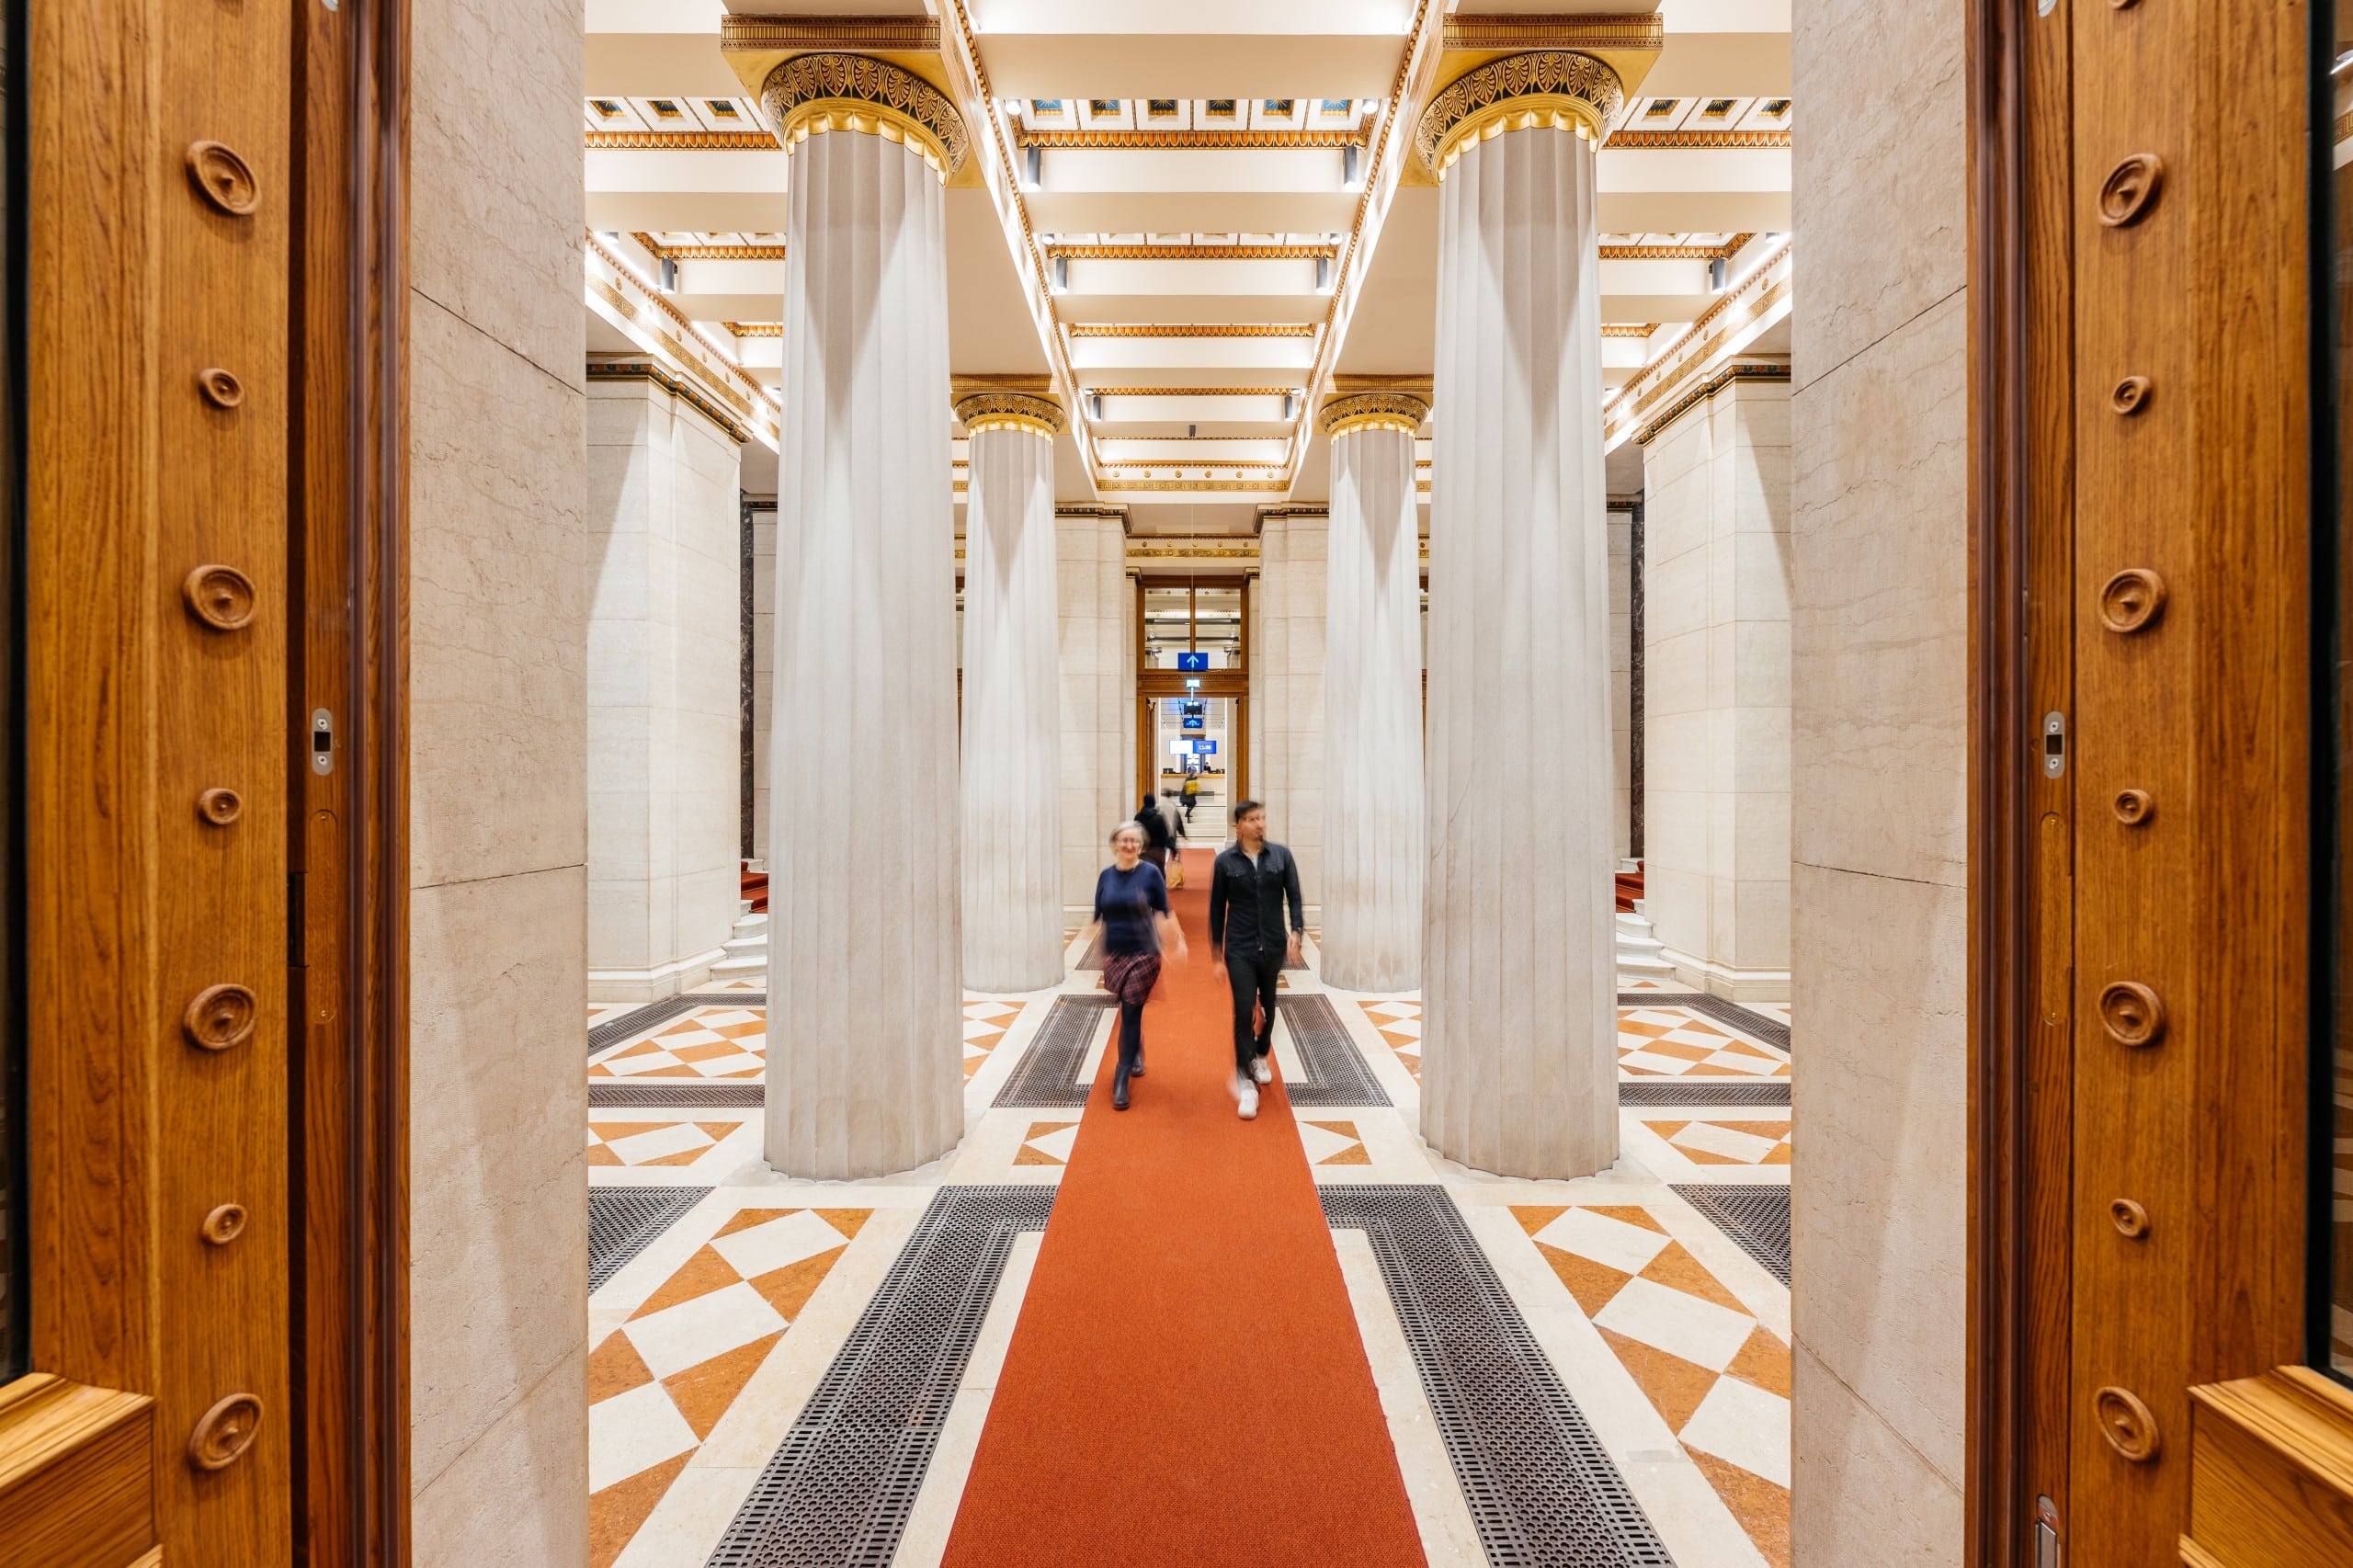 Das renovierte Parlament Wien öffnet seine Pforten nun für alle. Die neue Ausstellung „Demokratikum“ soll Demokratie erklären. Foto: Marcus Sies